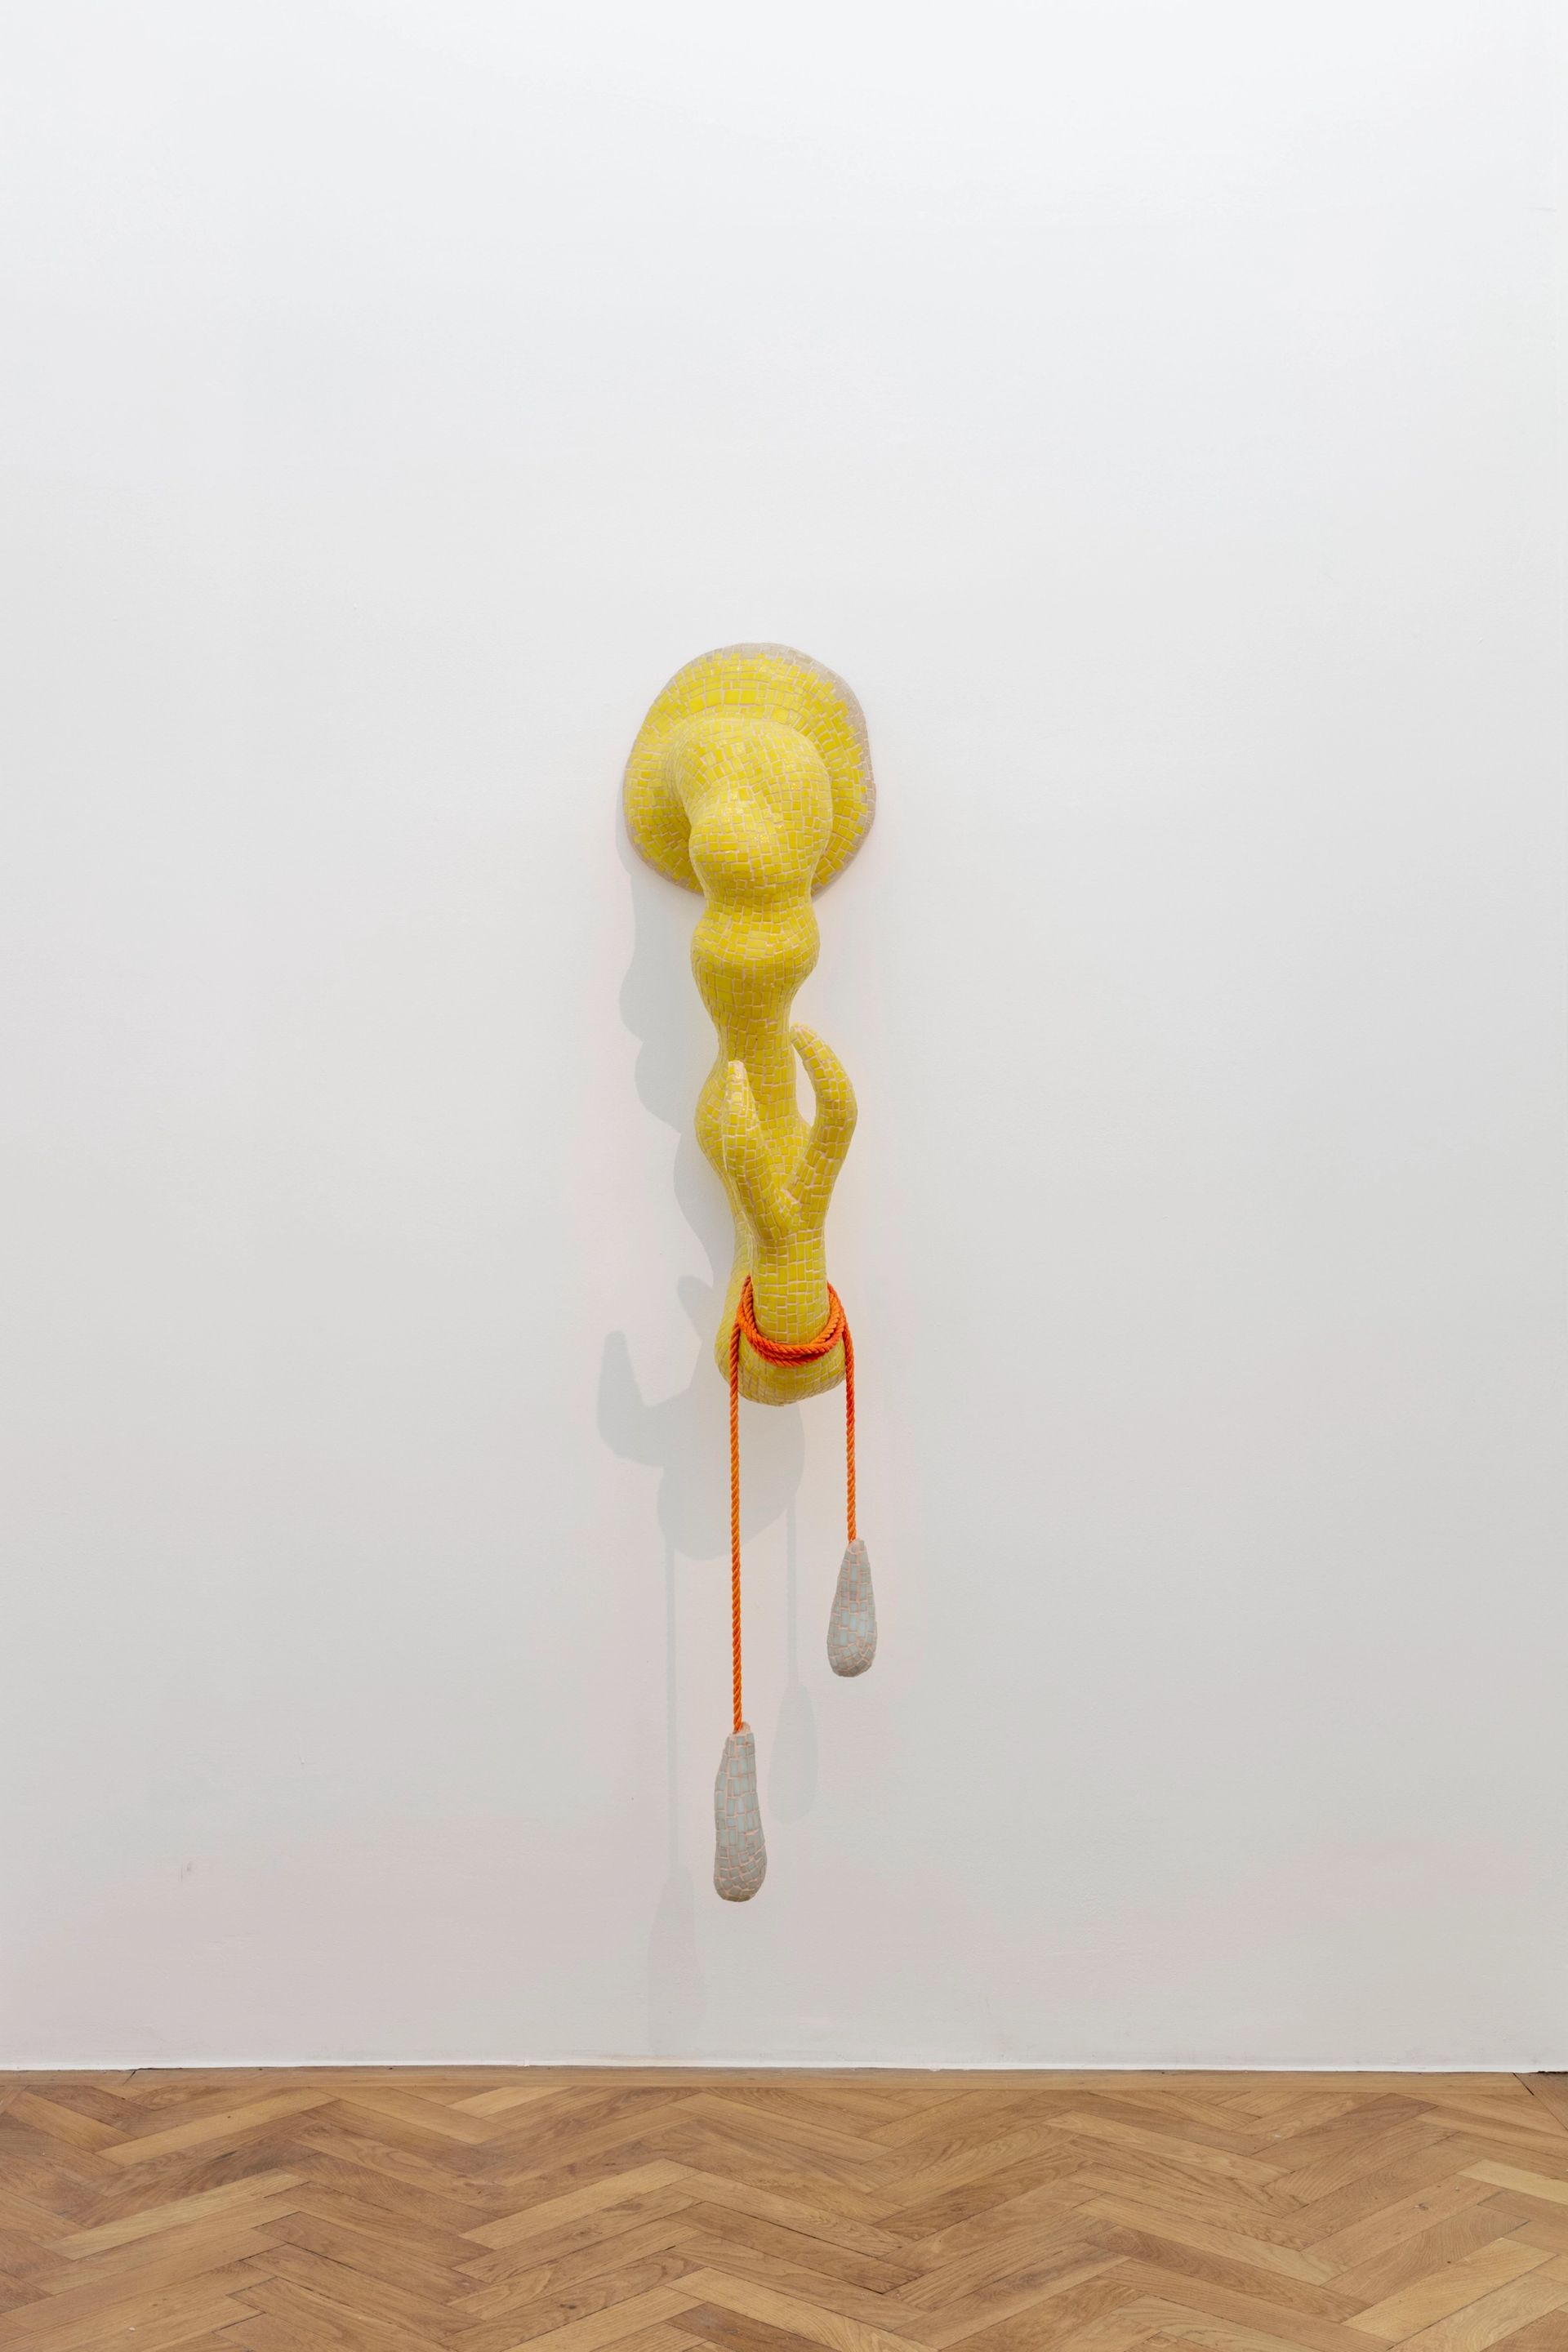 Zsófia Keresztes, “Limits of capacity”, 2018, styrofoam, rope, glue, grout, glass mosaic, textile dye, felt, expanding foam, 202 × 37 × 53 cm photo: Sebastian Kissel